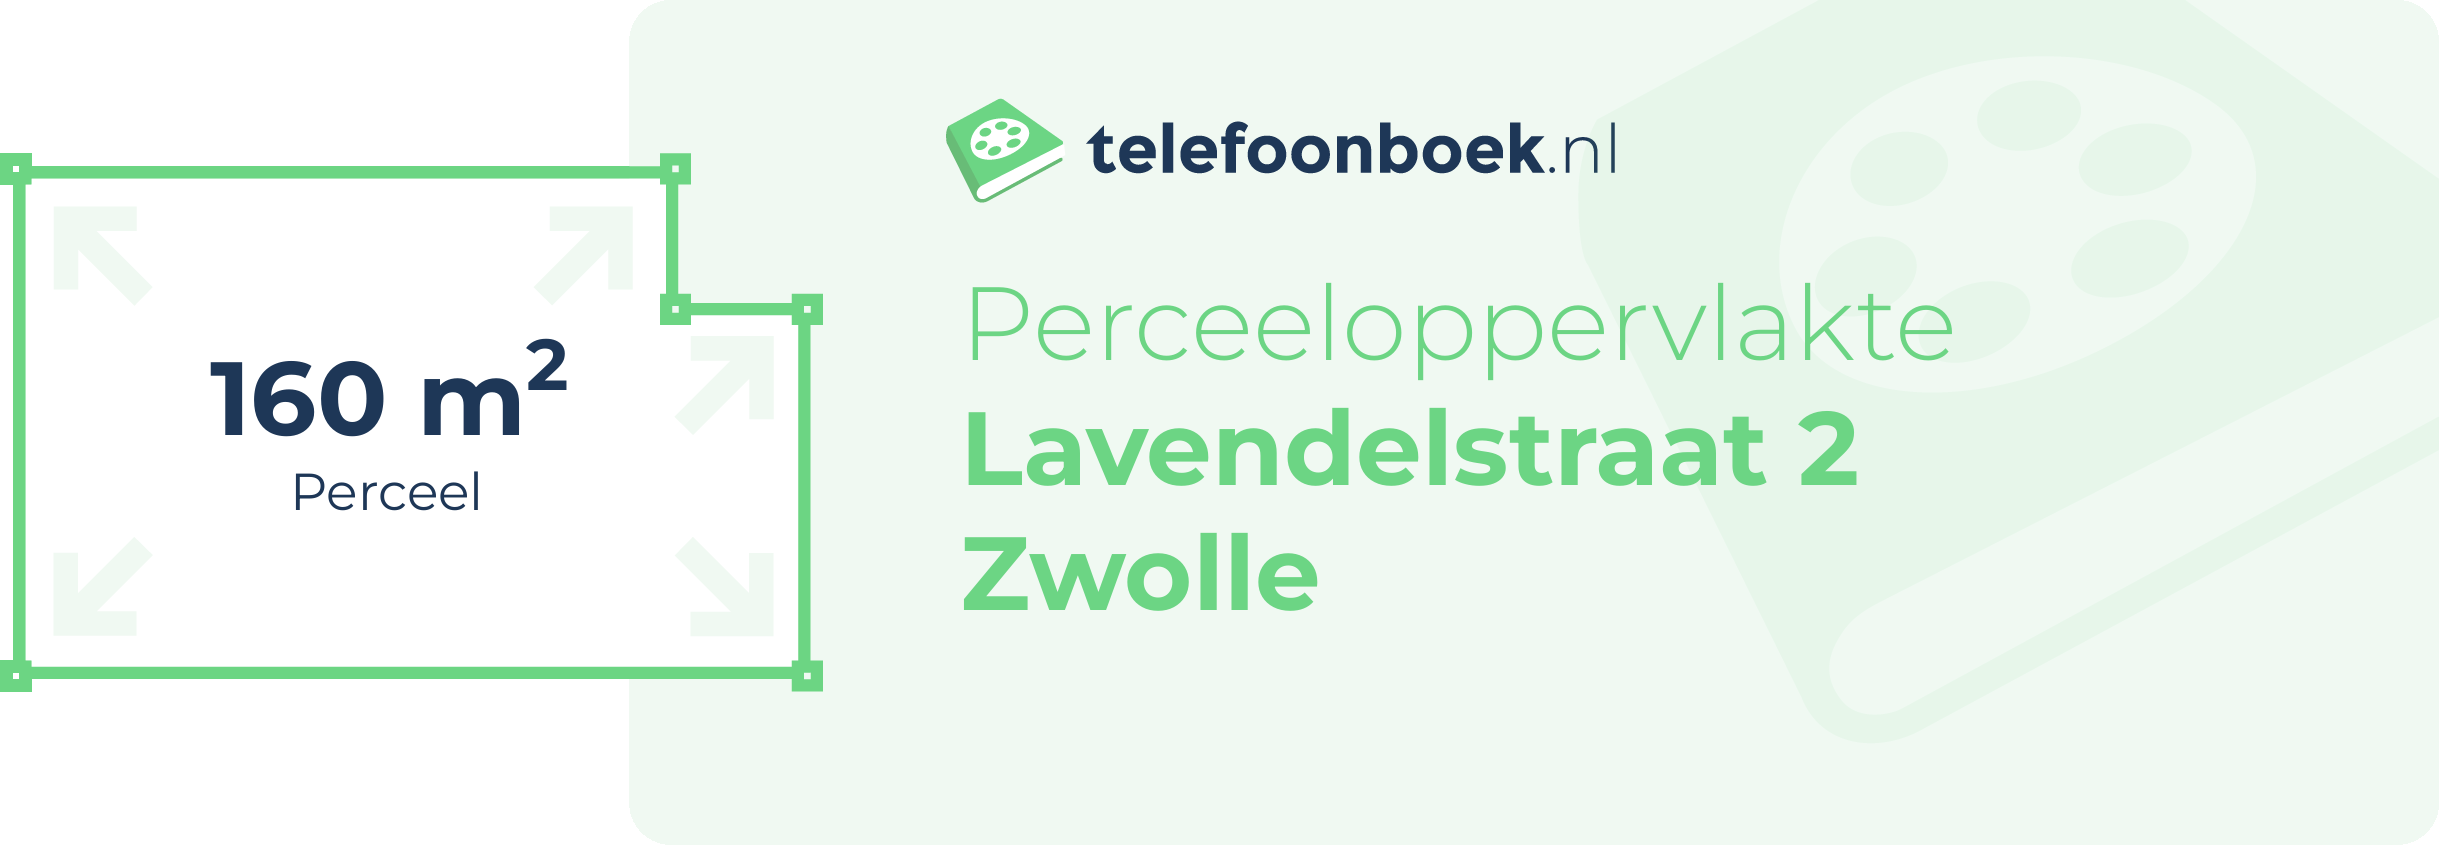 Perceeloppervlakte Lavendelstraat 2 Zwolle